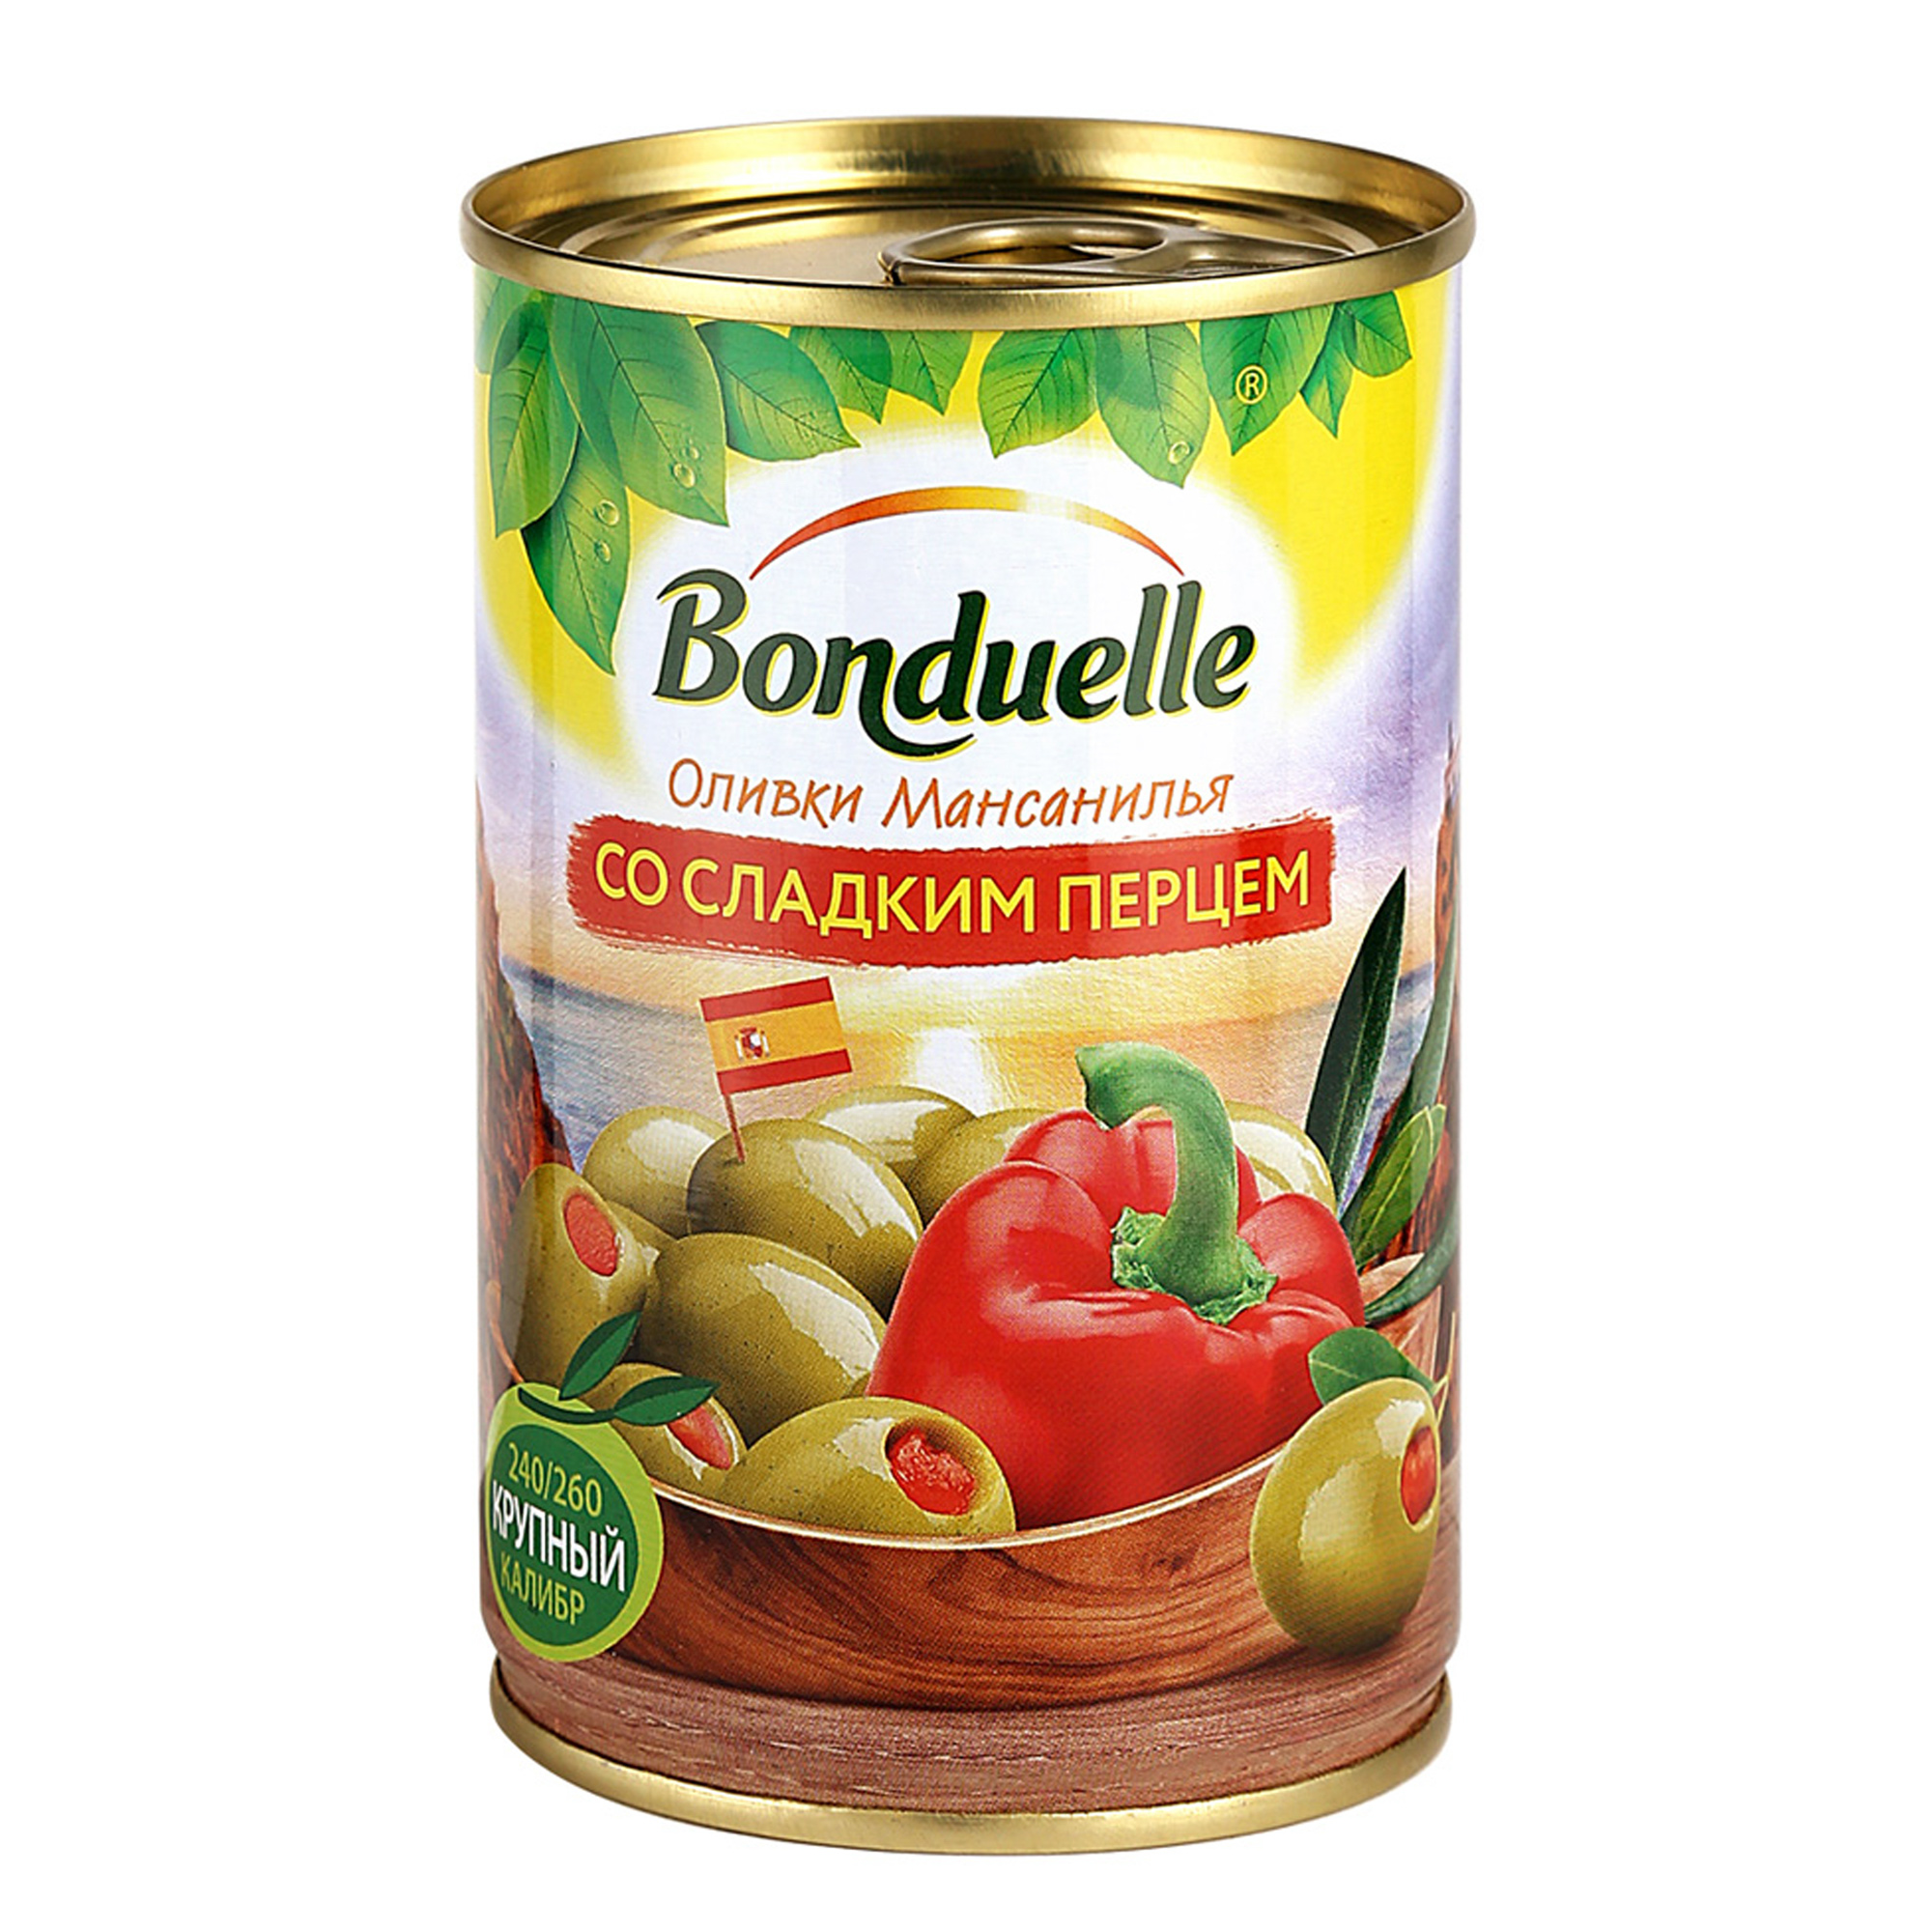 Оливки Bonduelle со сладким перцем 314 г галеты овощные bonduelle сицилийские 300 гр